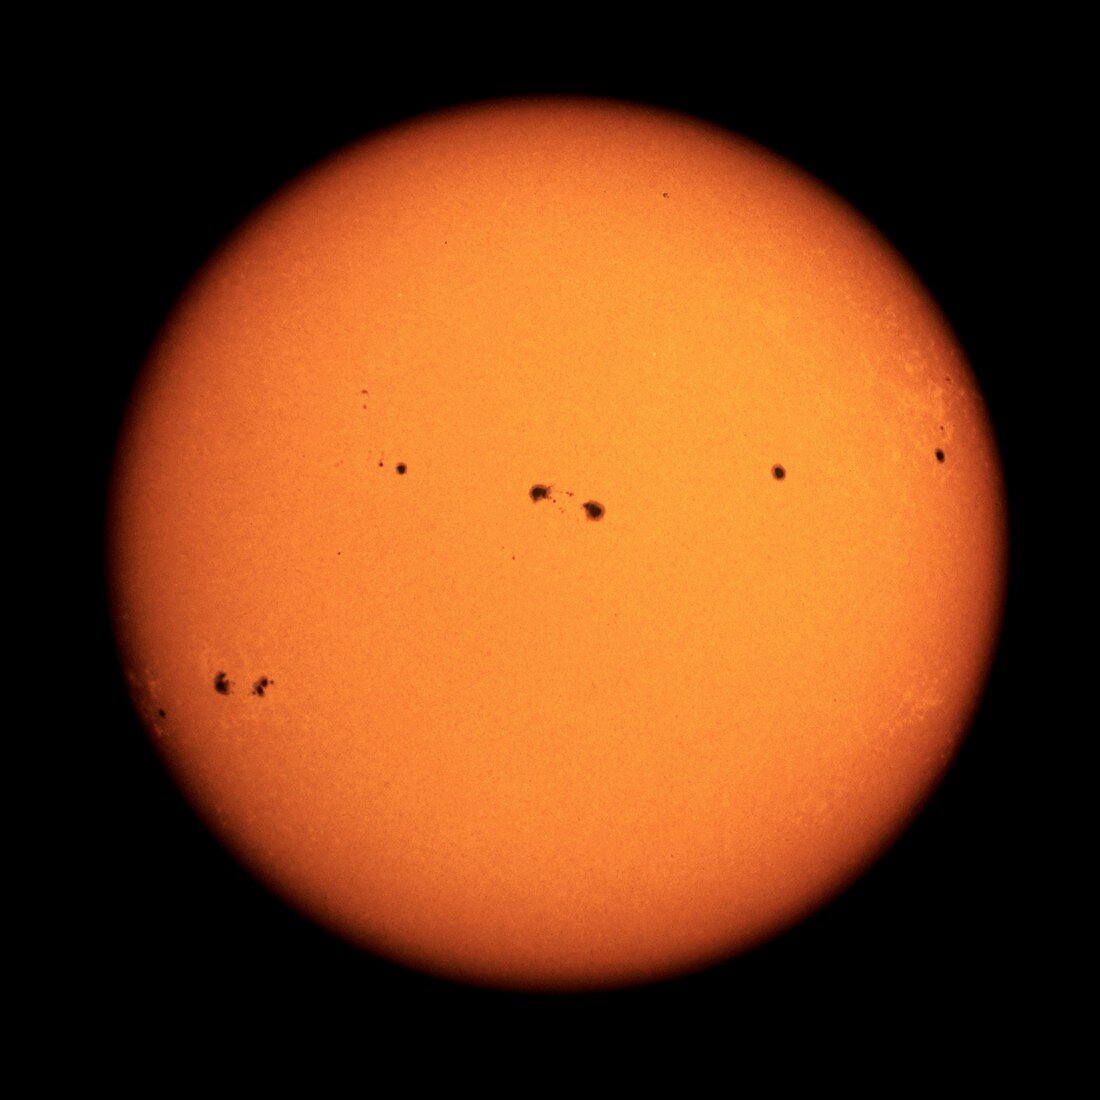 Sunspots on the Sun, October 1989